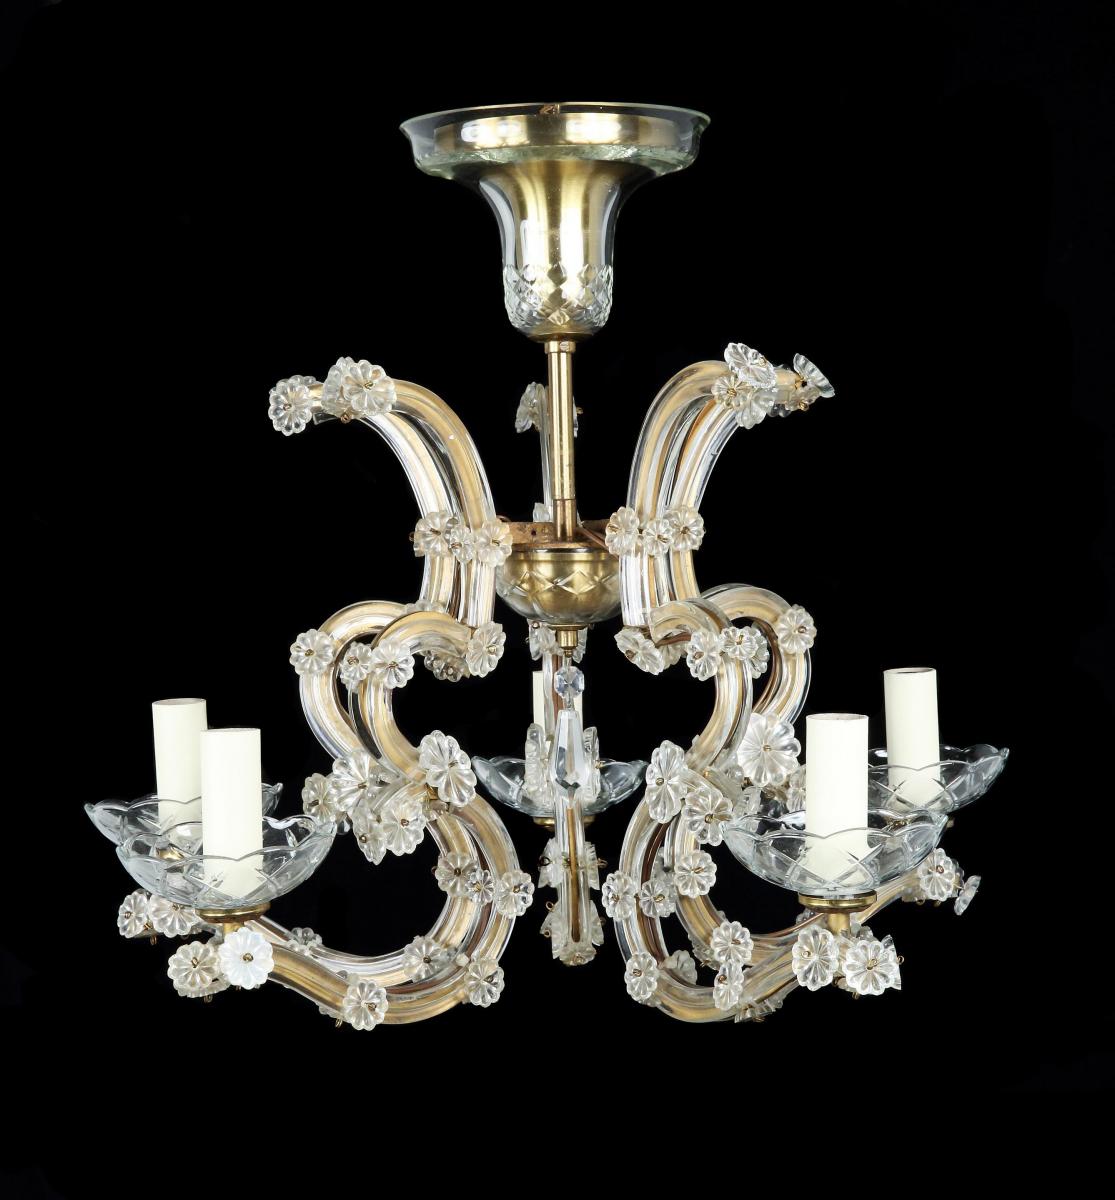 An Antiquarian, electrified, 6-arm gilt brass & glass chandelier